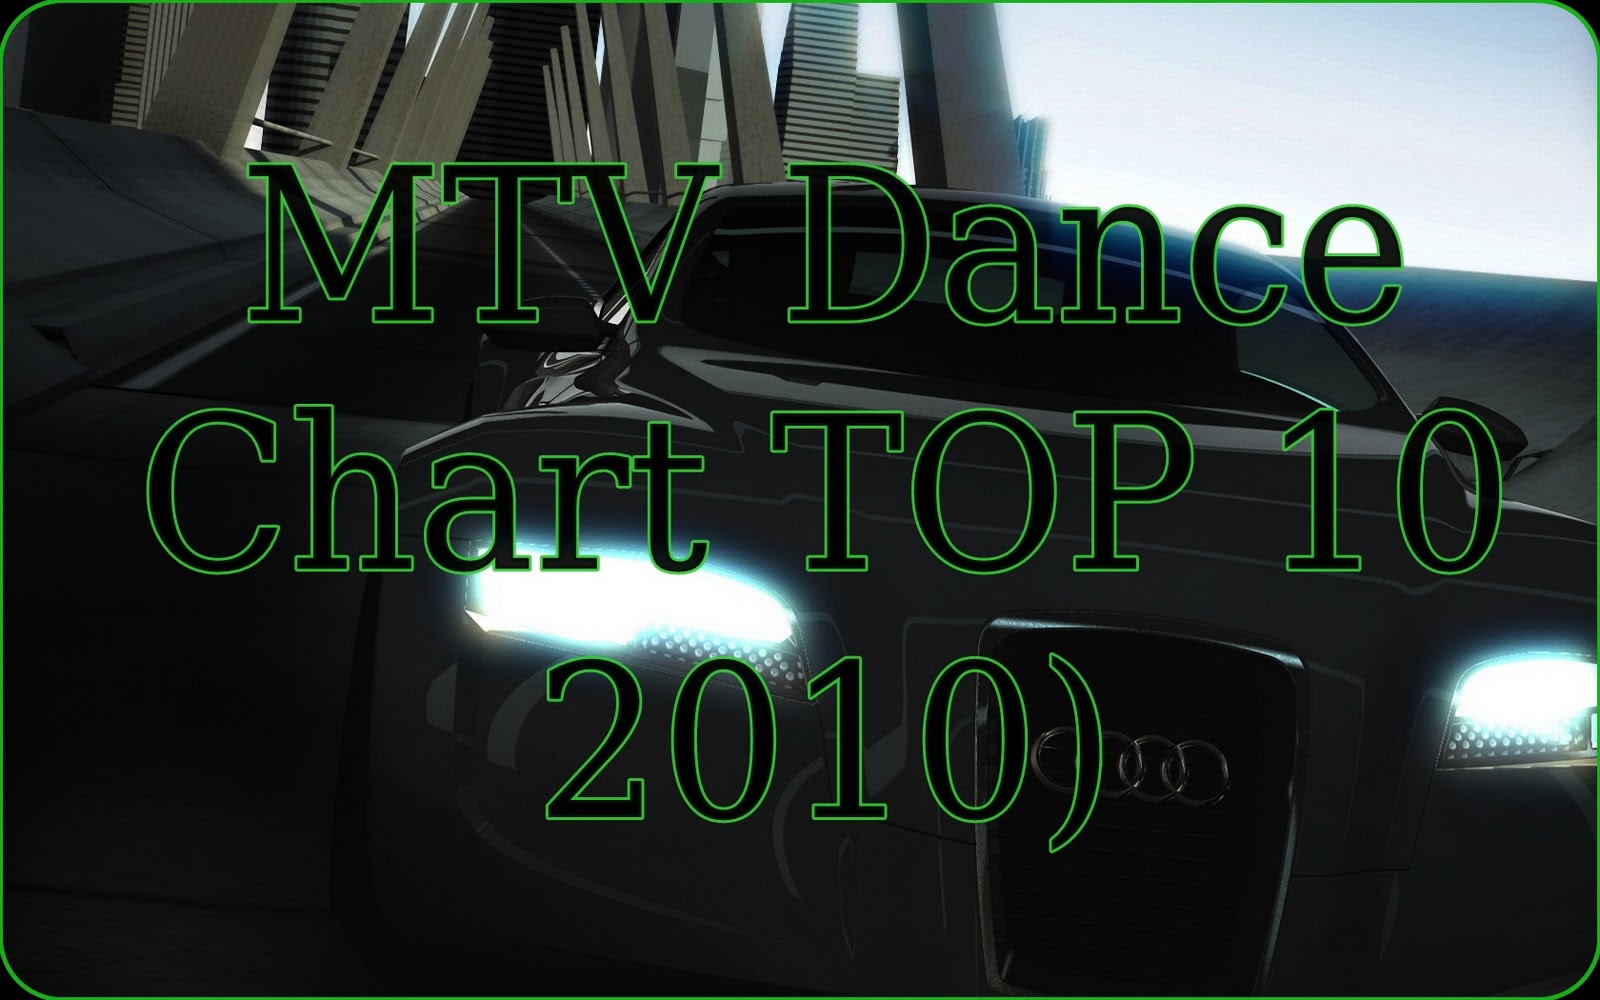 http://3.bp.blogspot.com/_qb388zIMbys/TBEwNrFHMcI/AAAAAAAACY8/CRmgCvXts30/s1600/MTV+Dance+Chart+TOP+10+%282010%29.jpg